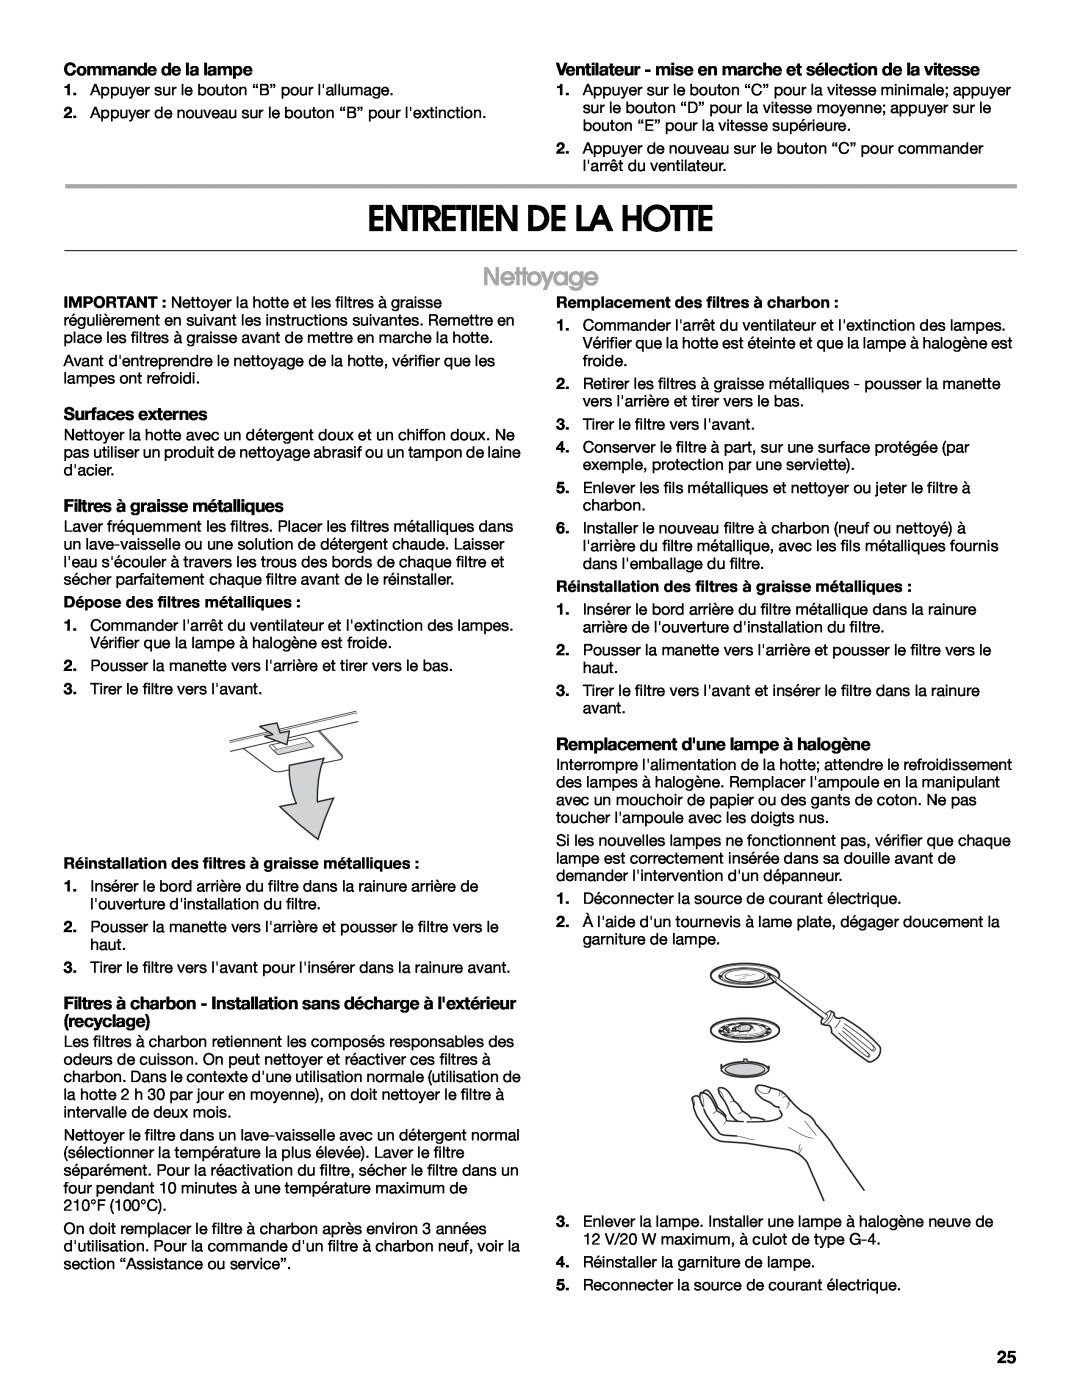 Whirlpool W10018010 installation instructions Entretien De La Hotte, Nettoyage, Commande de la lampe, Surfaces externes 